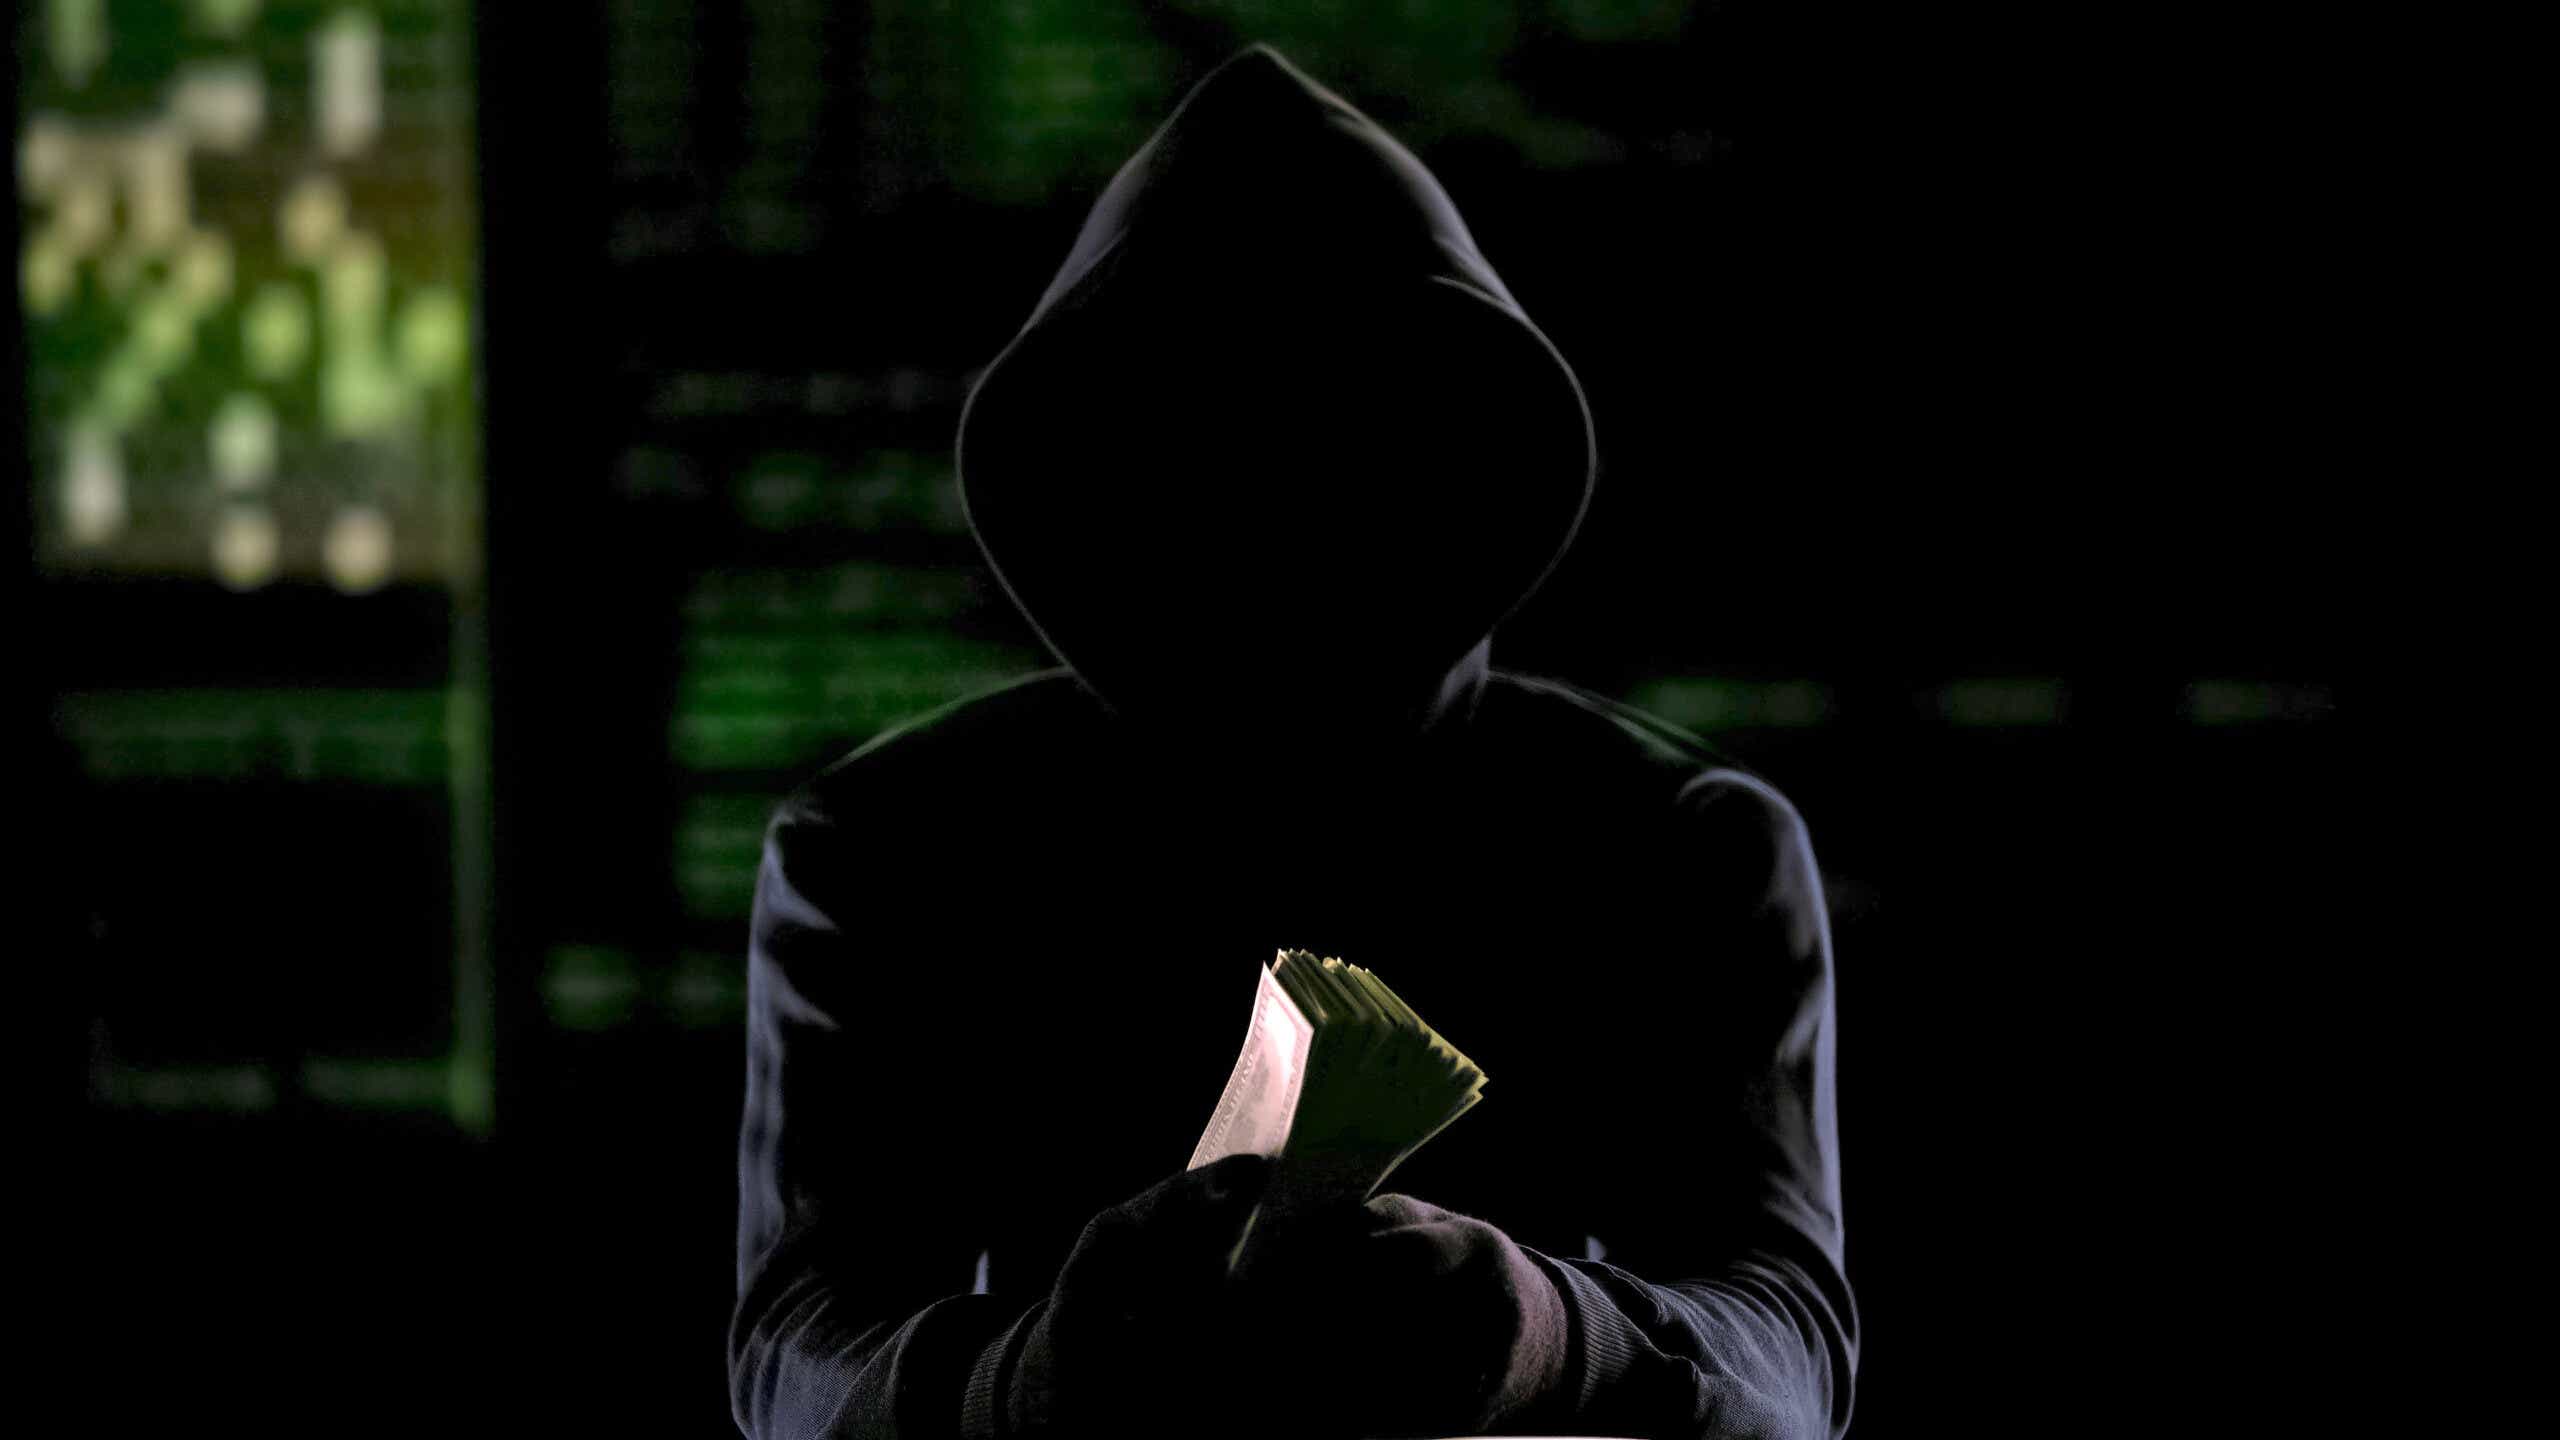 Hooded man in darkness holding cash, murder-for-hire reward or stolen money